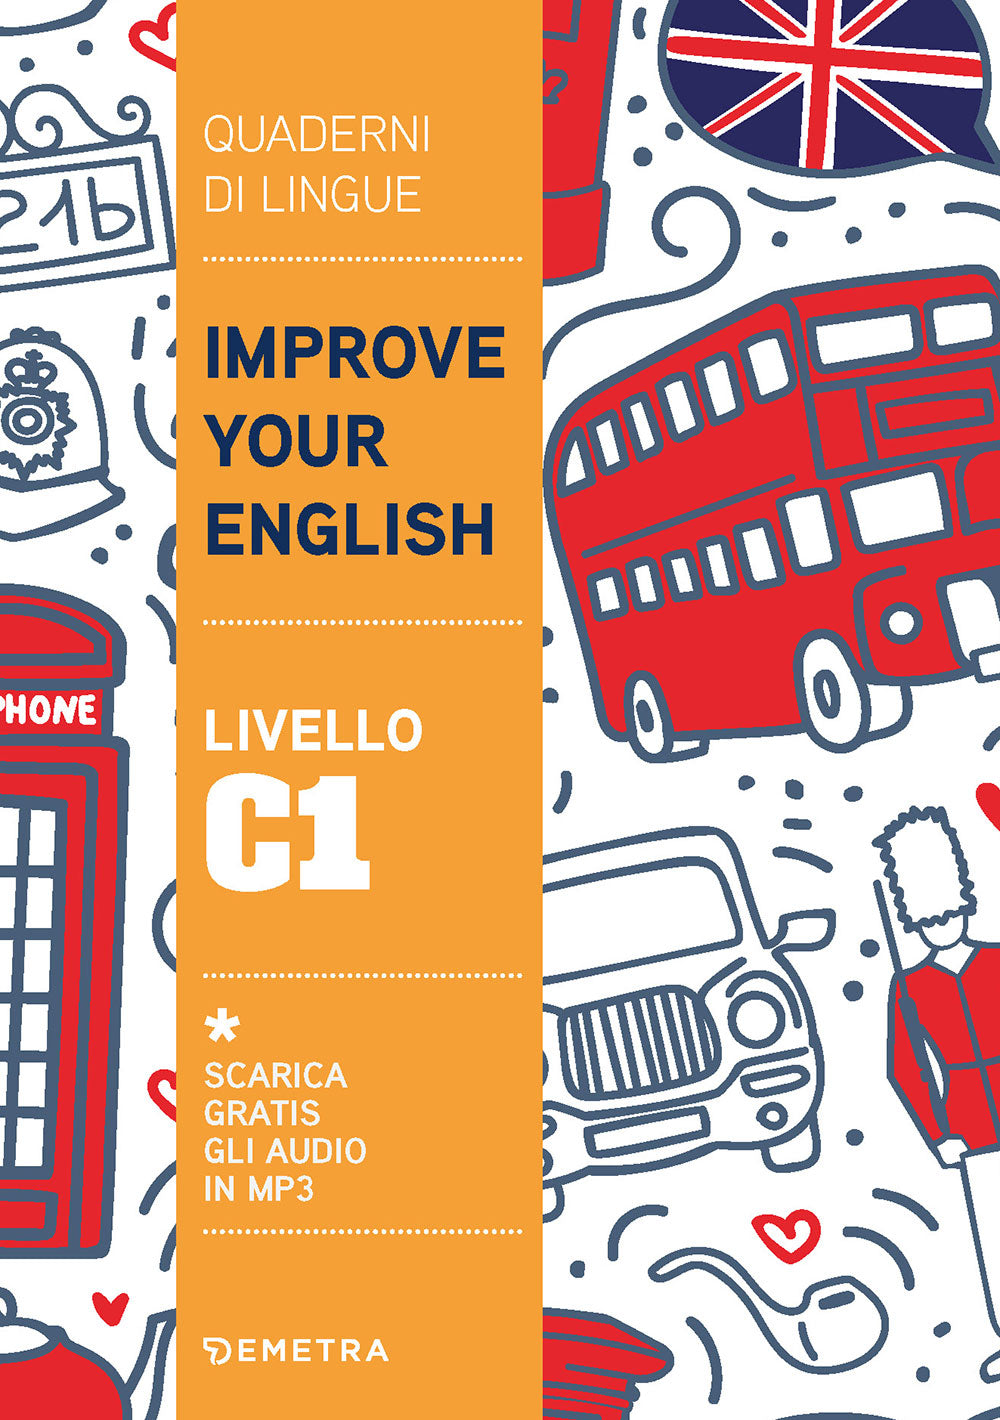 Improve Your English livello C1::Scarica gratis gli audio in MP3